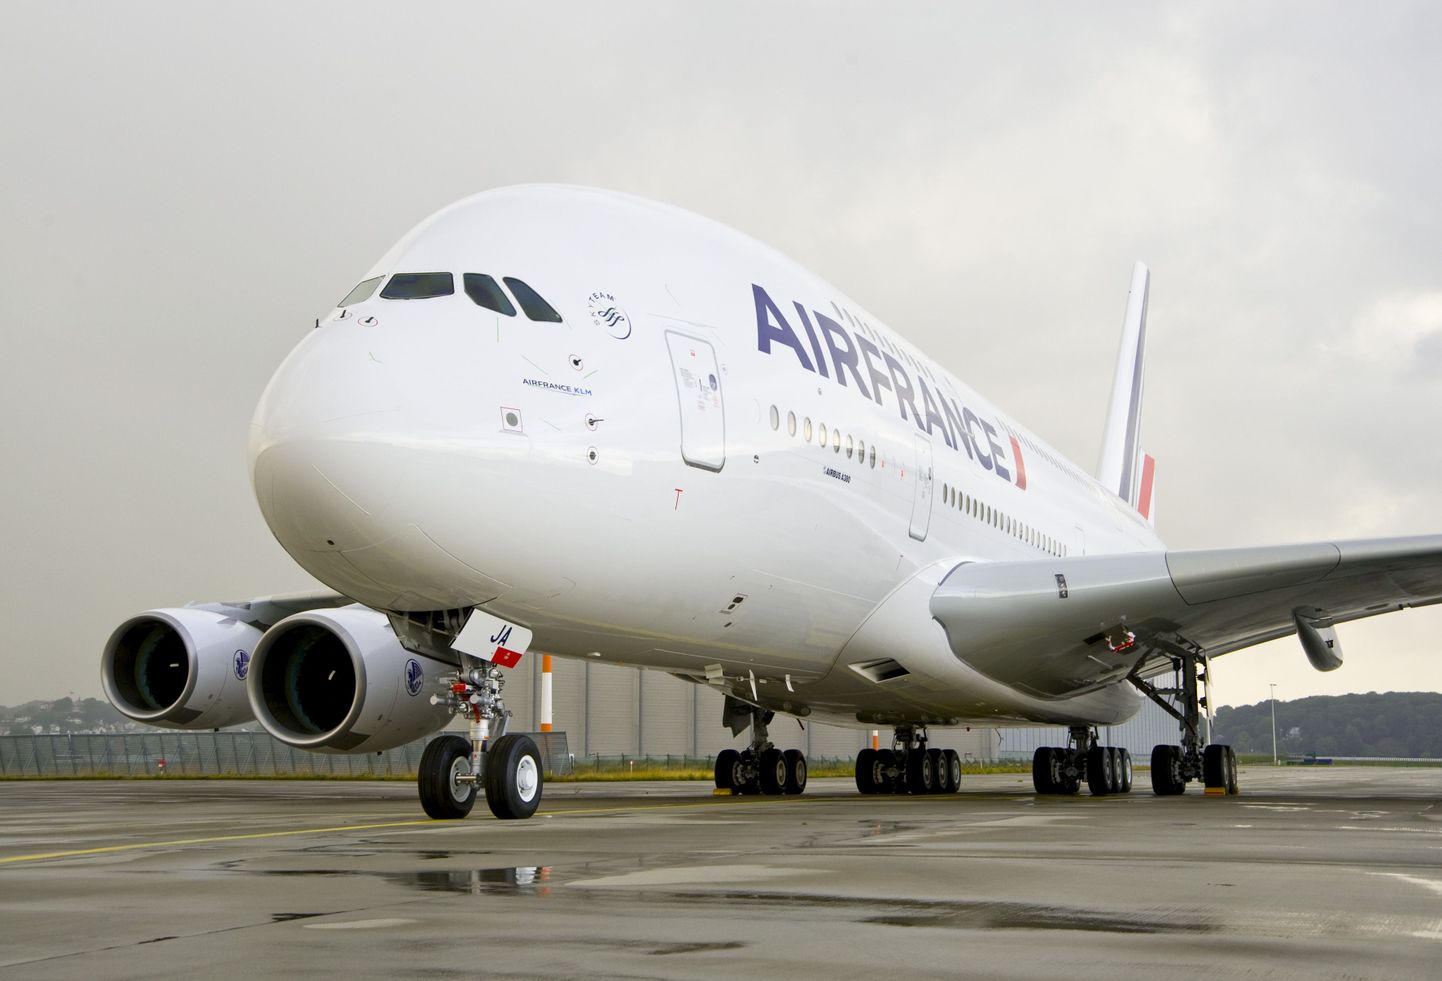 Hiigellennuk A380 hakkab esmaspäevast Euroopa ja USA vahet lendama.